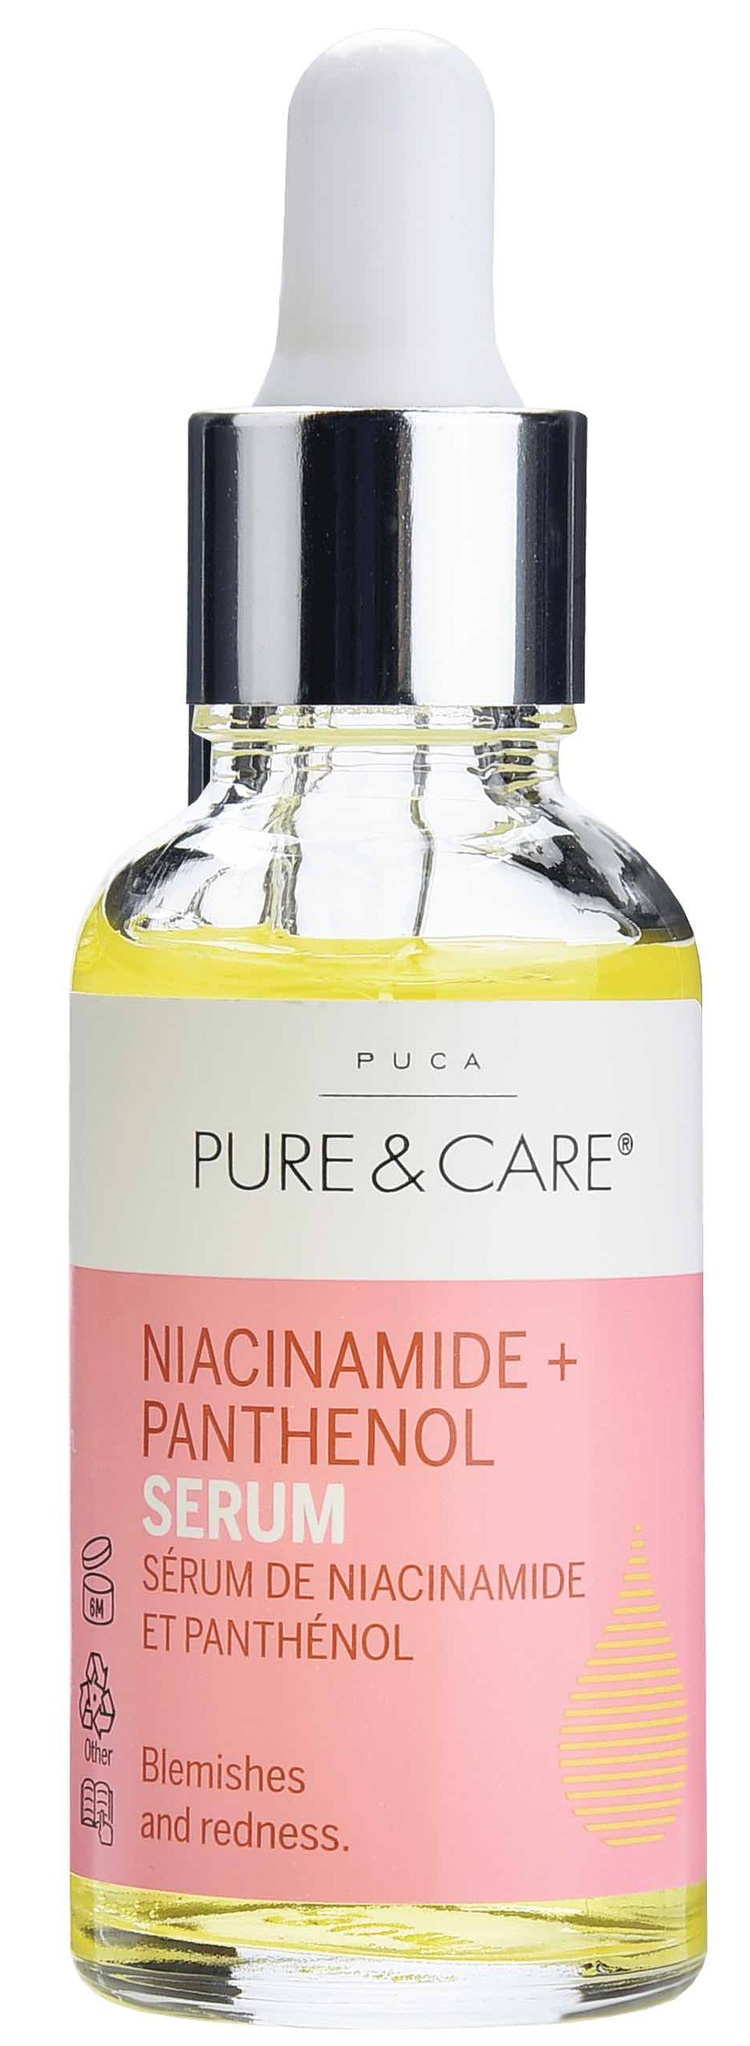 Puca Pure & Care Niacinamide + Panthenol Serum